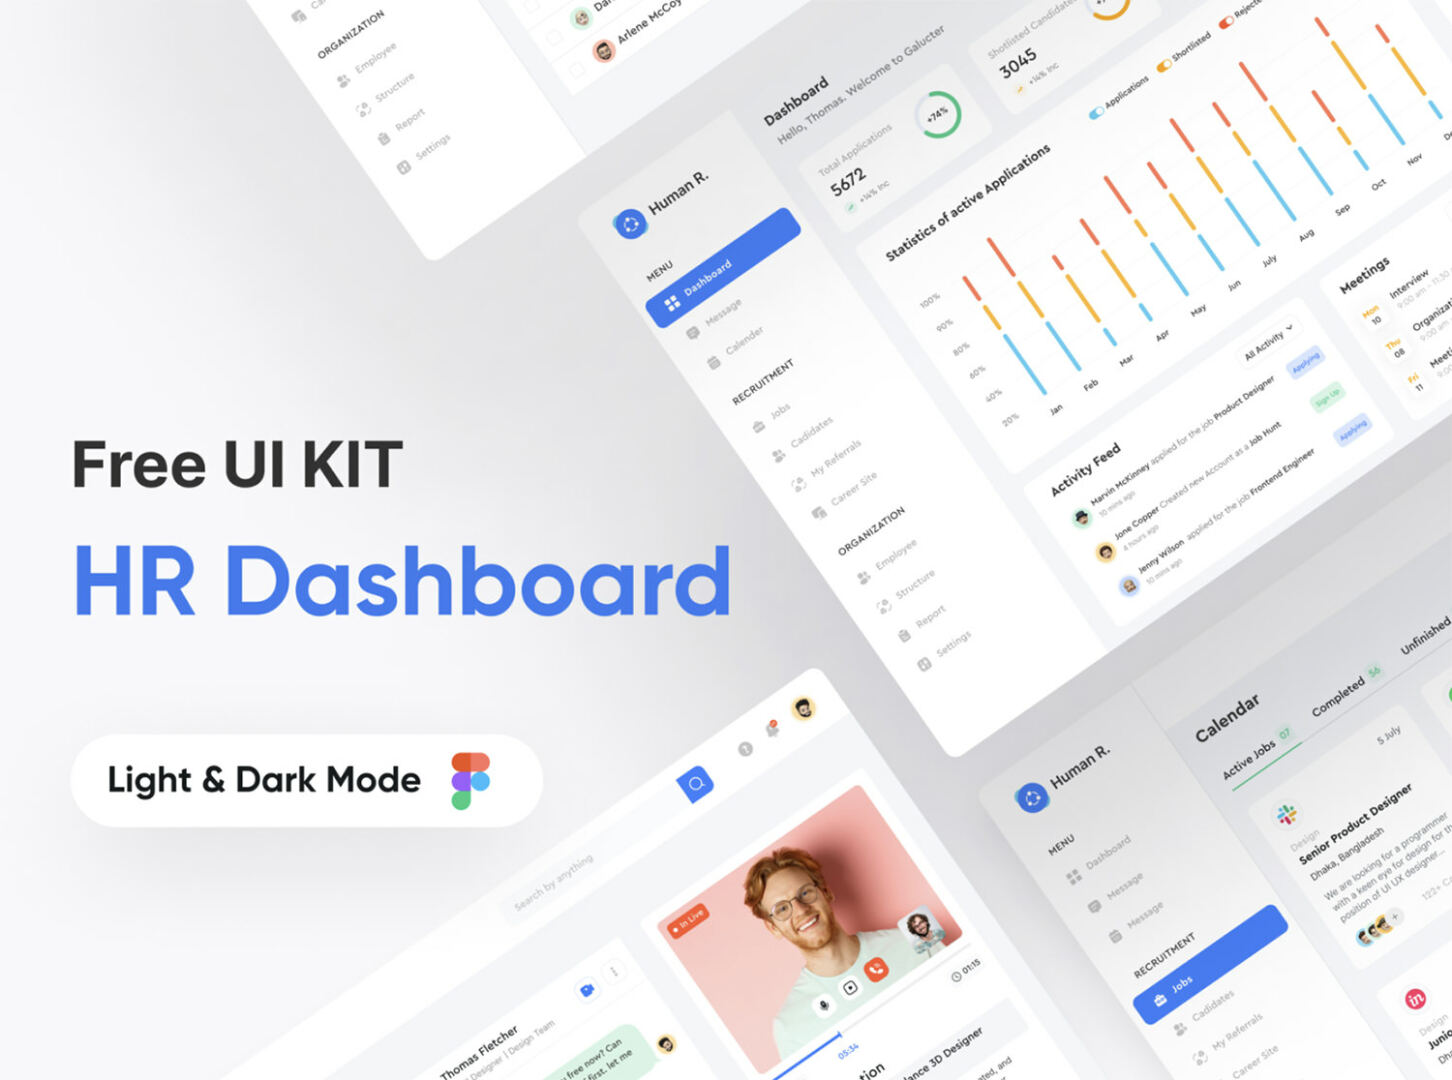 HR Management Dashboard UI Kit